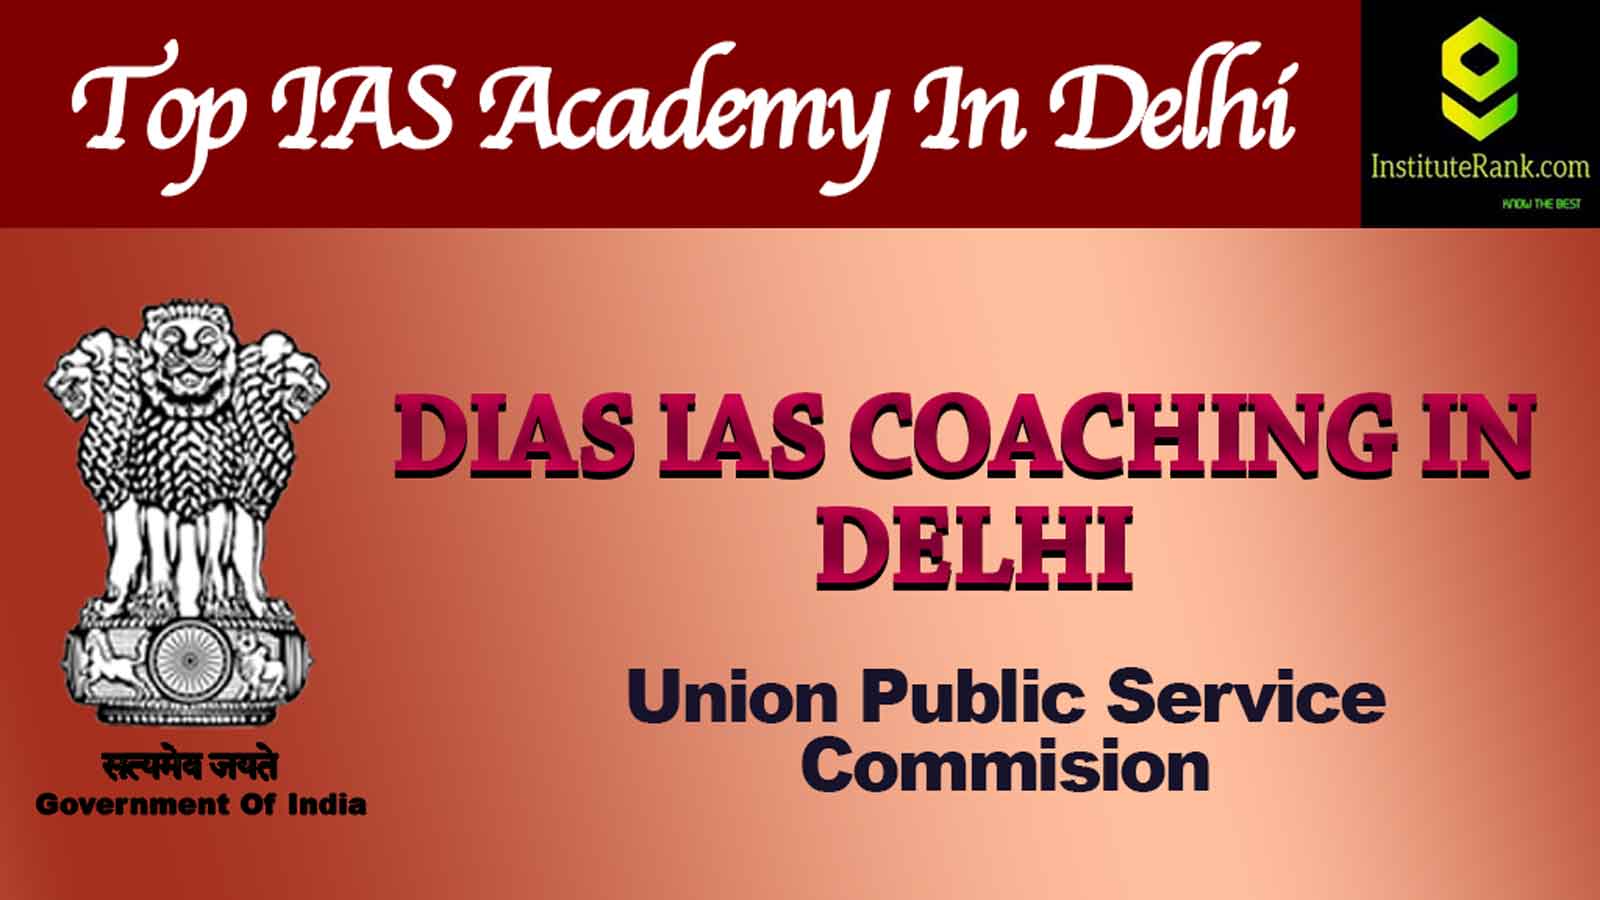 Dias IAS Coaching in Delhi